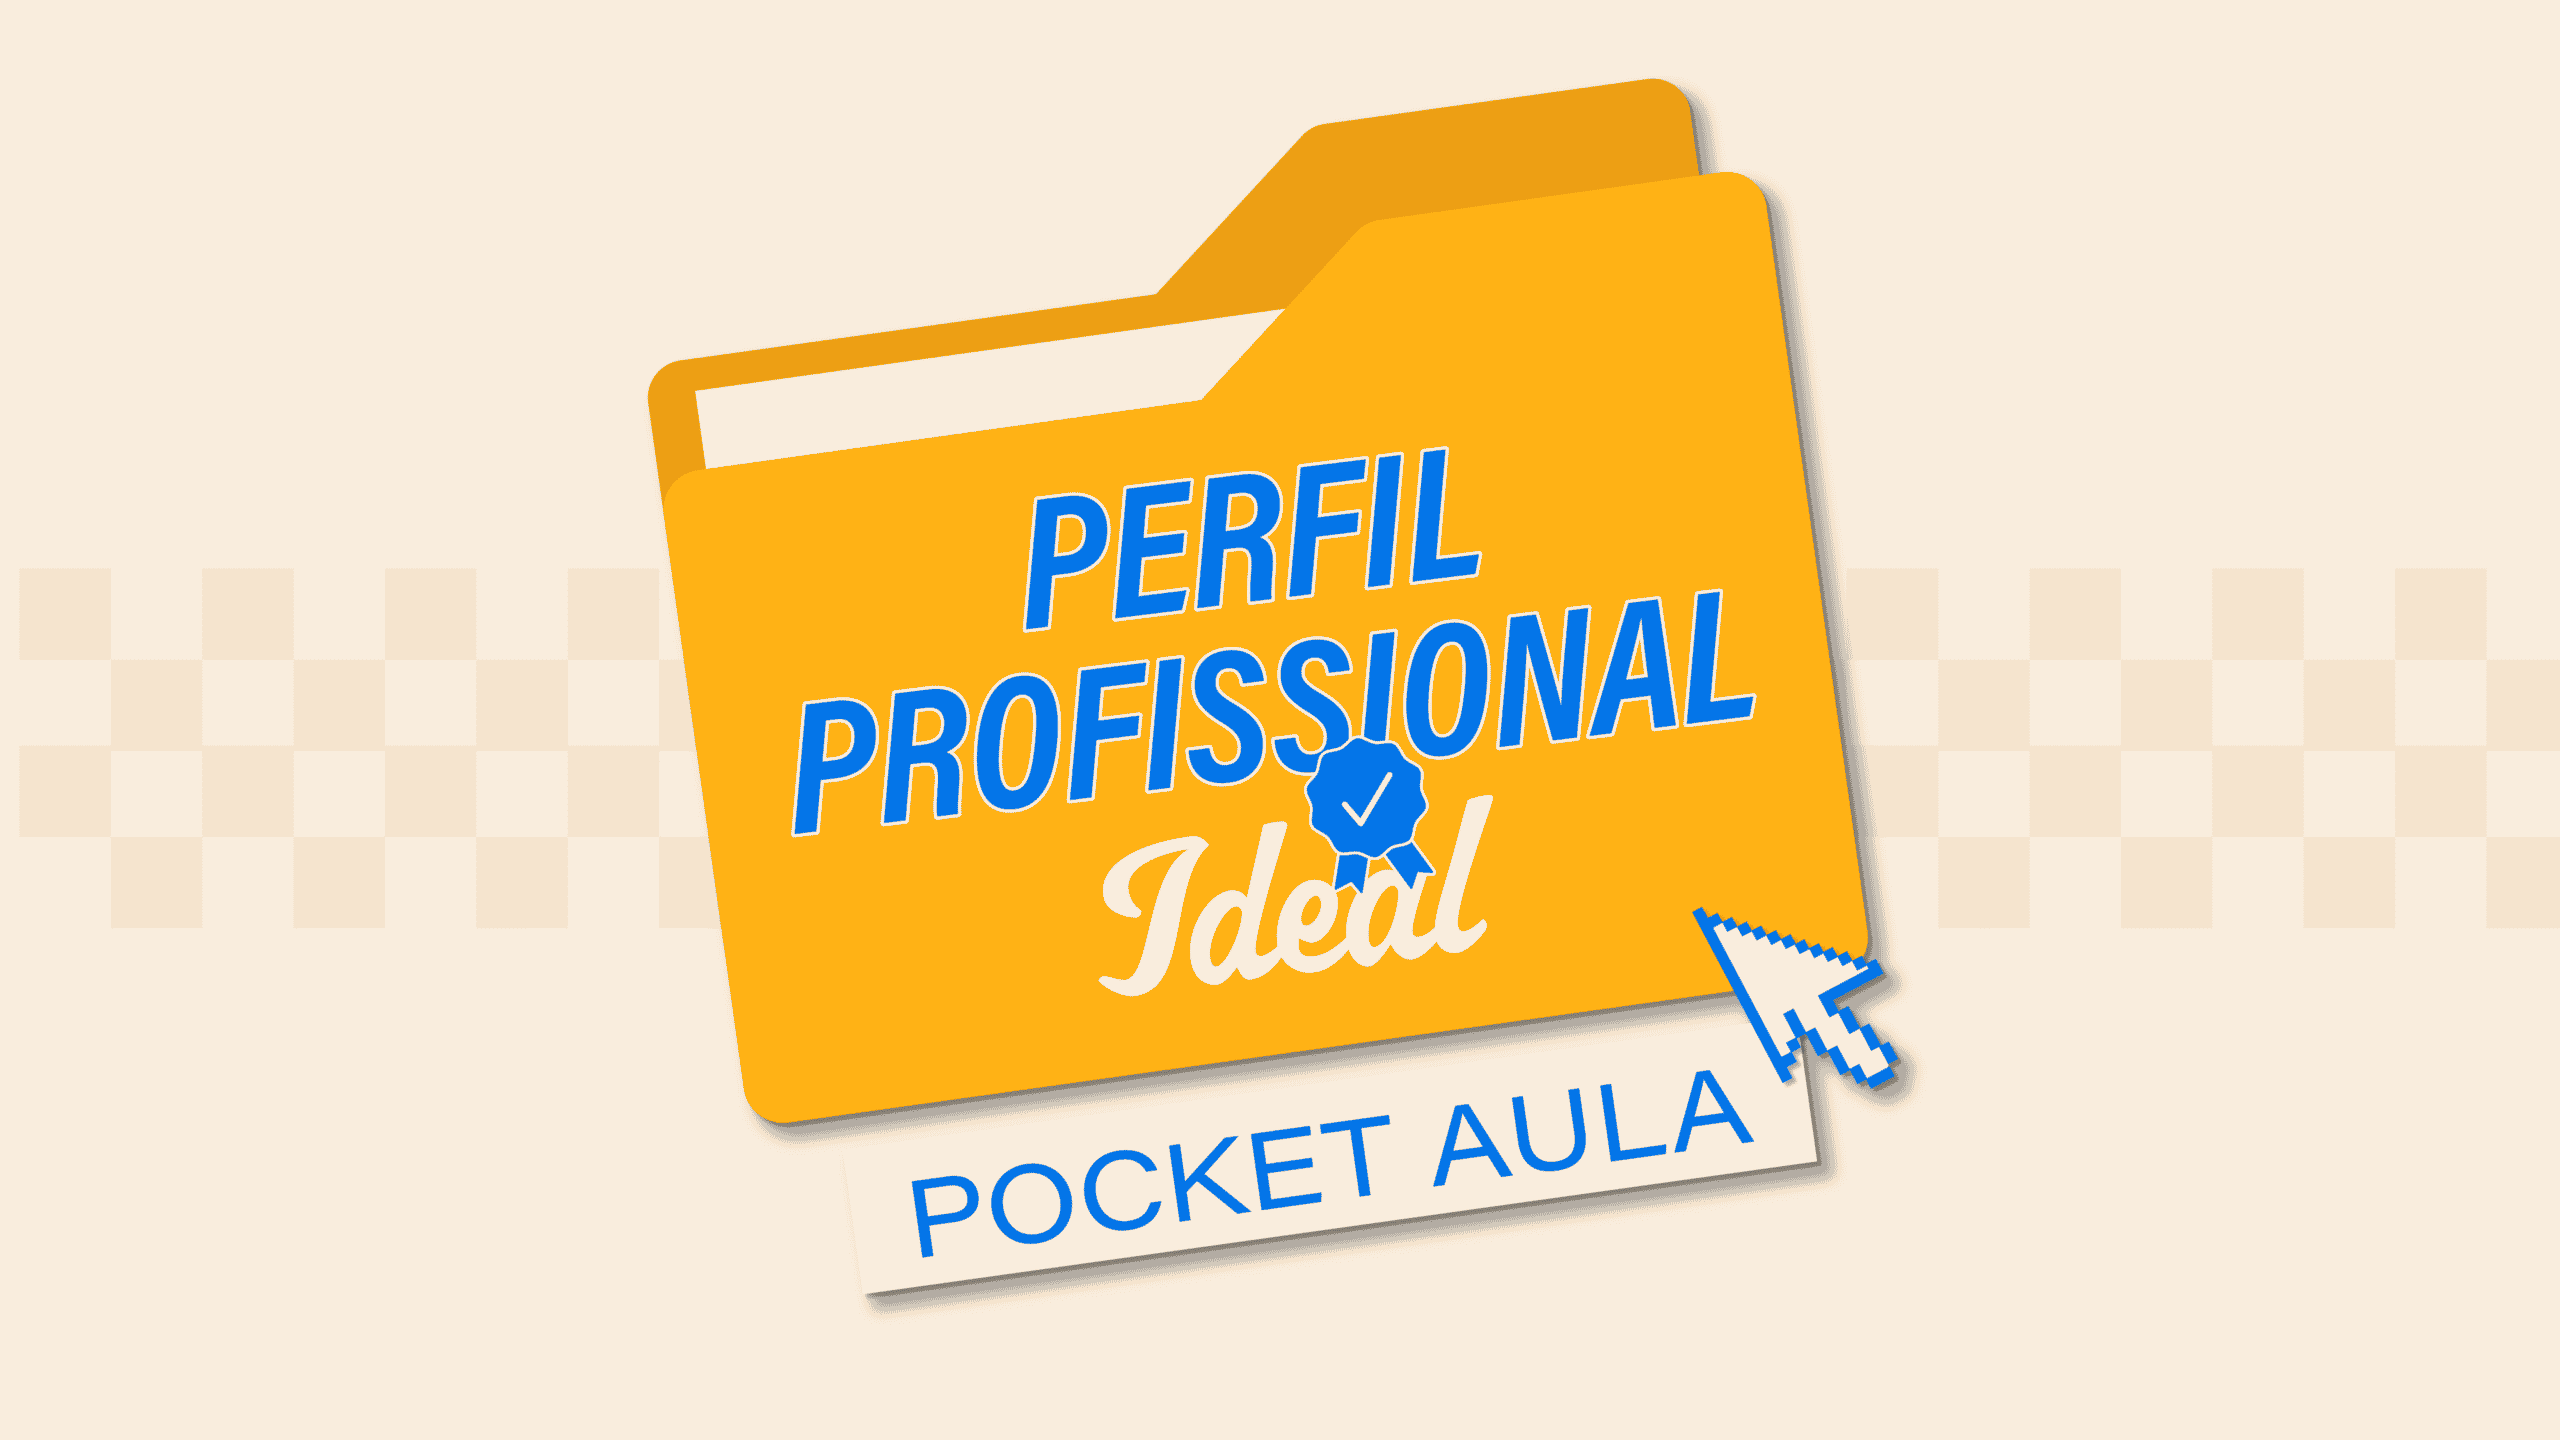 Pocket Aula de Perfil Profssional